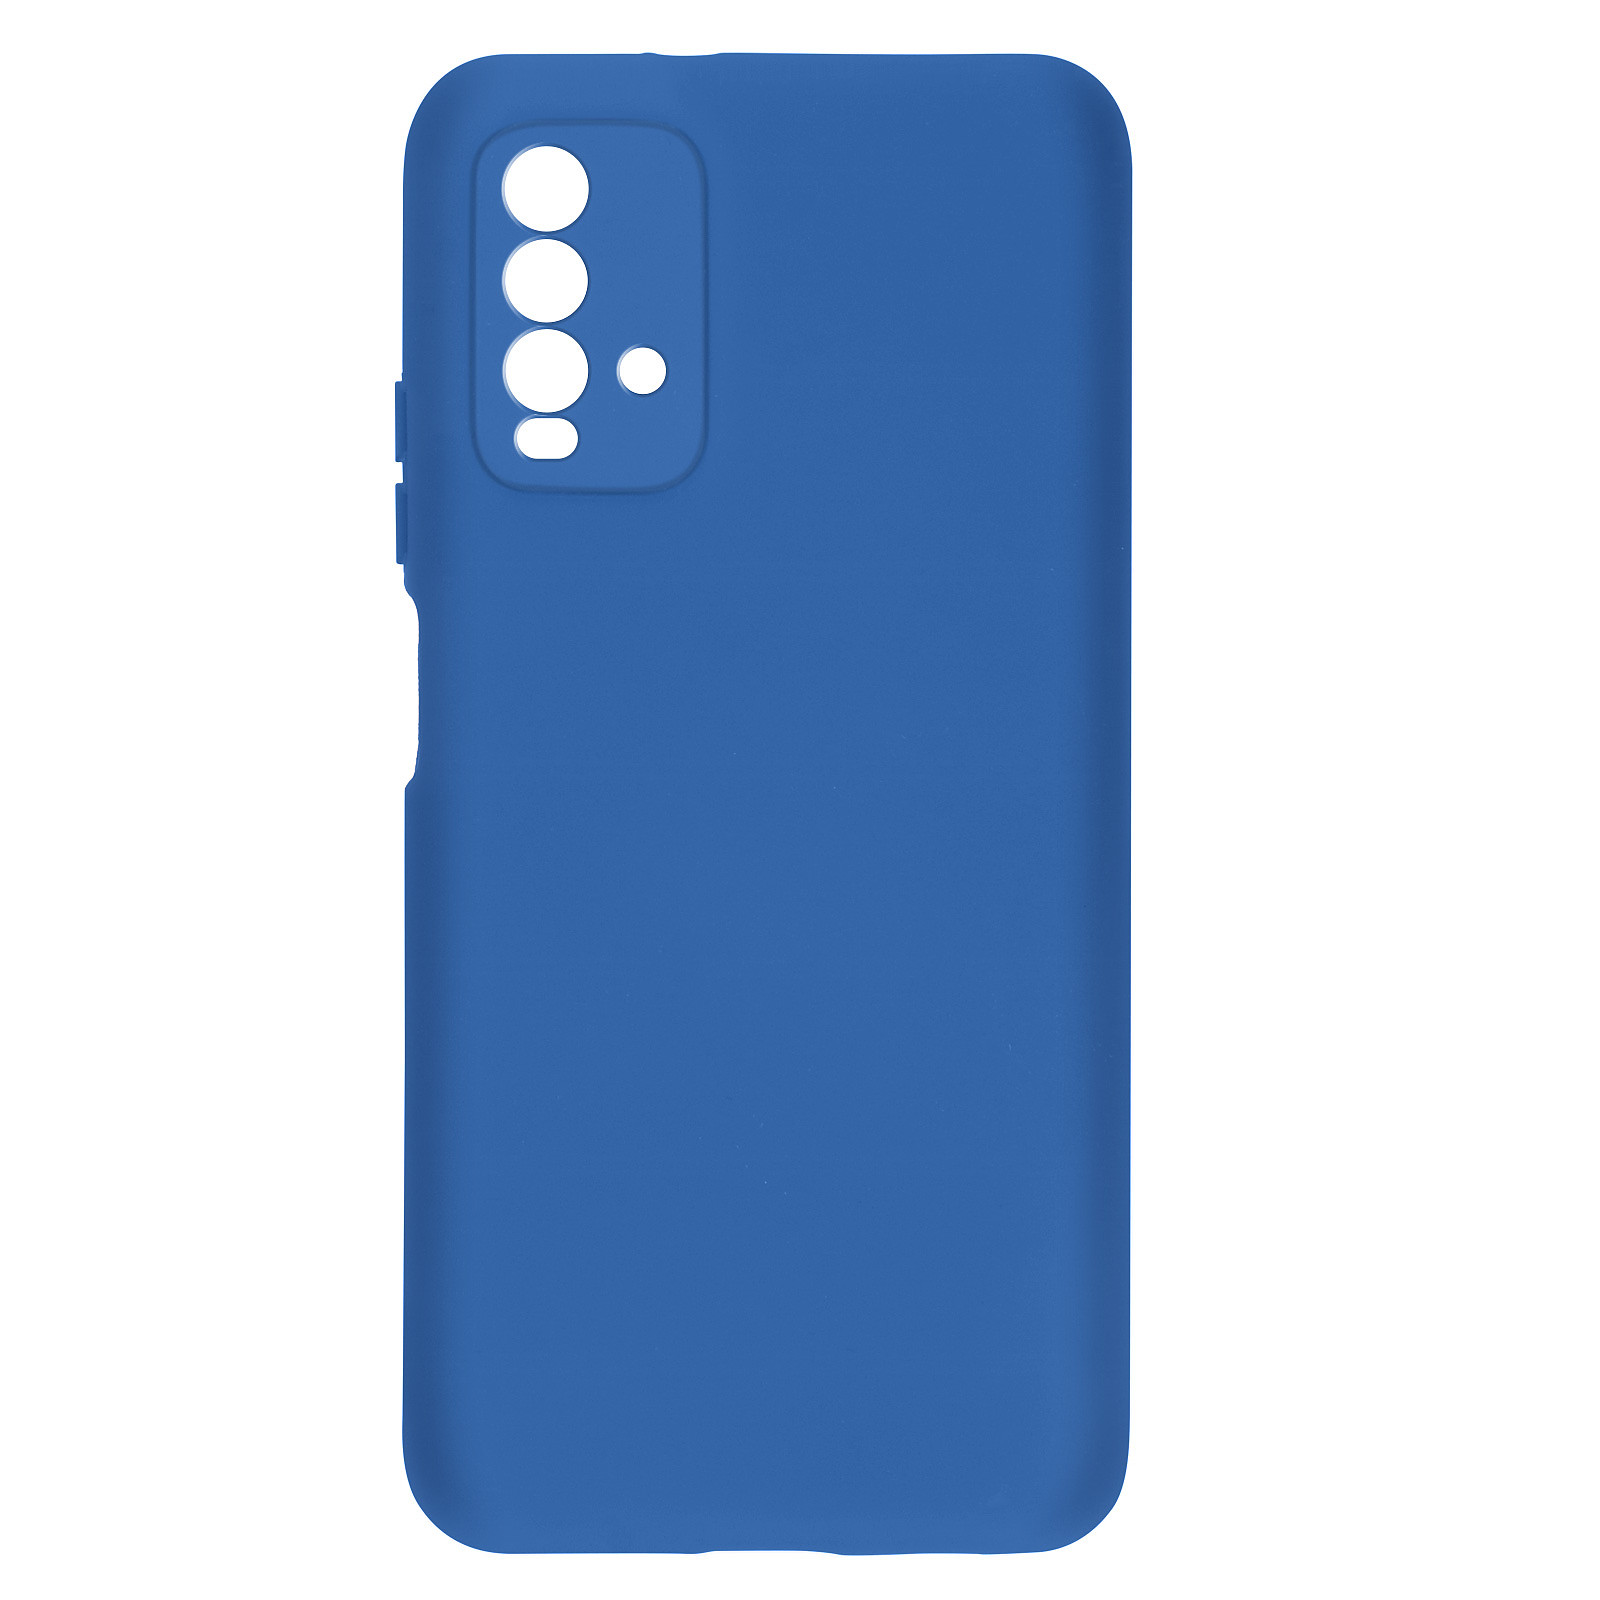 Avizar Coque pour Xiaomi Redmi 9T Silicone Semi-rigide Finition Soft Touch Fine Bleu - Coque telephone Avizar